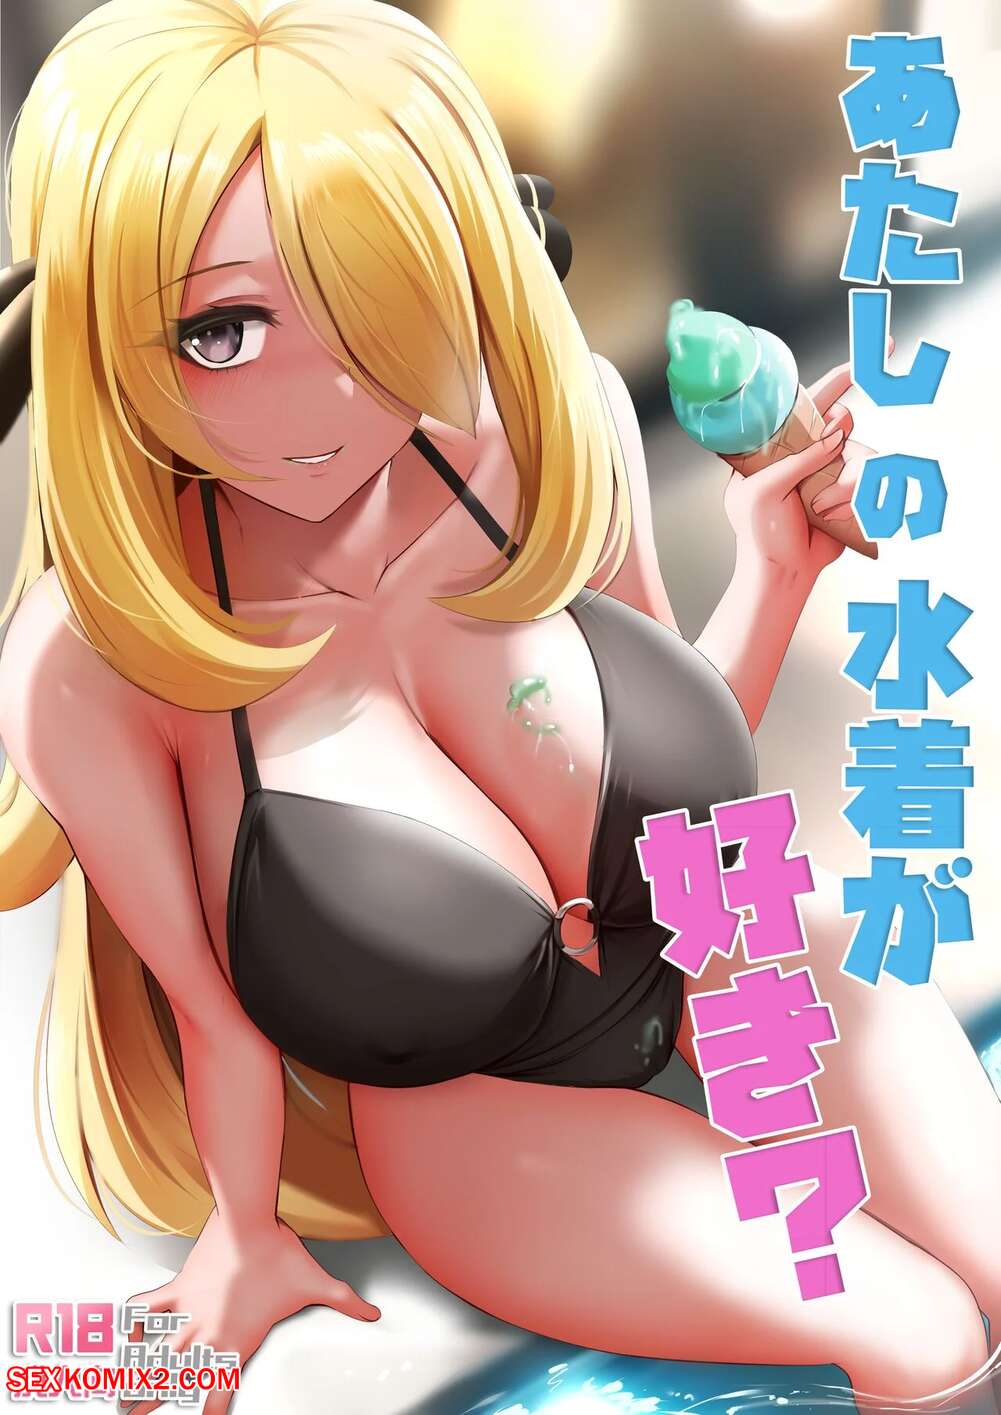 âœ…ï¸ Porn comic Do You Like My Swimsuit. Pokemon Sex comic hot blonde beauty  | Porn comics in English for adults only | sexkomix2.com